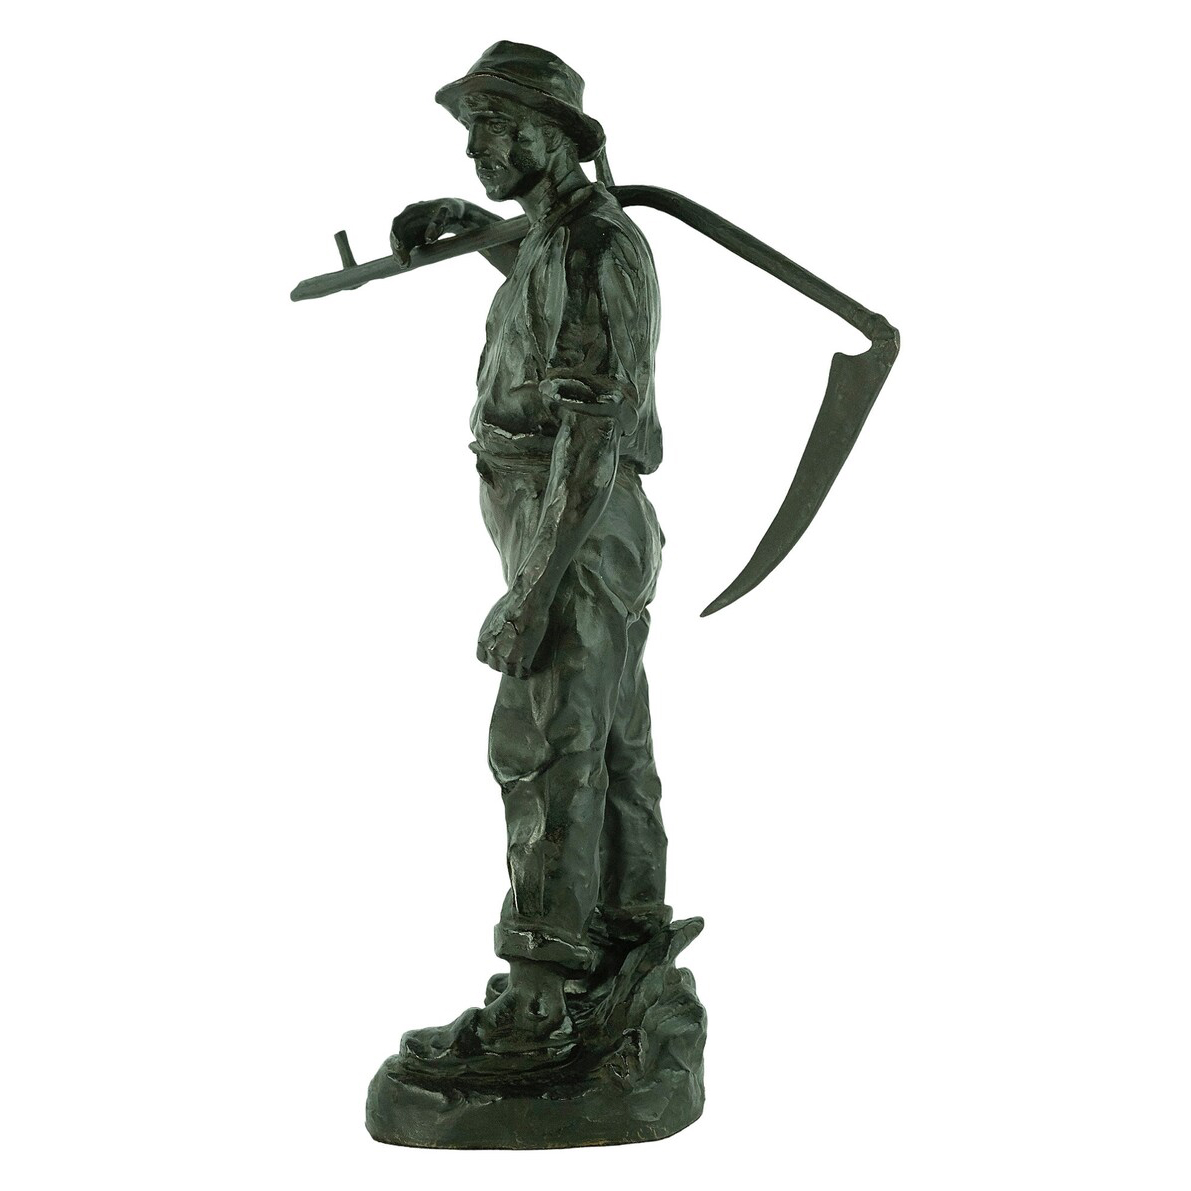 Statue of Farmer